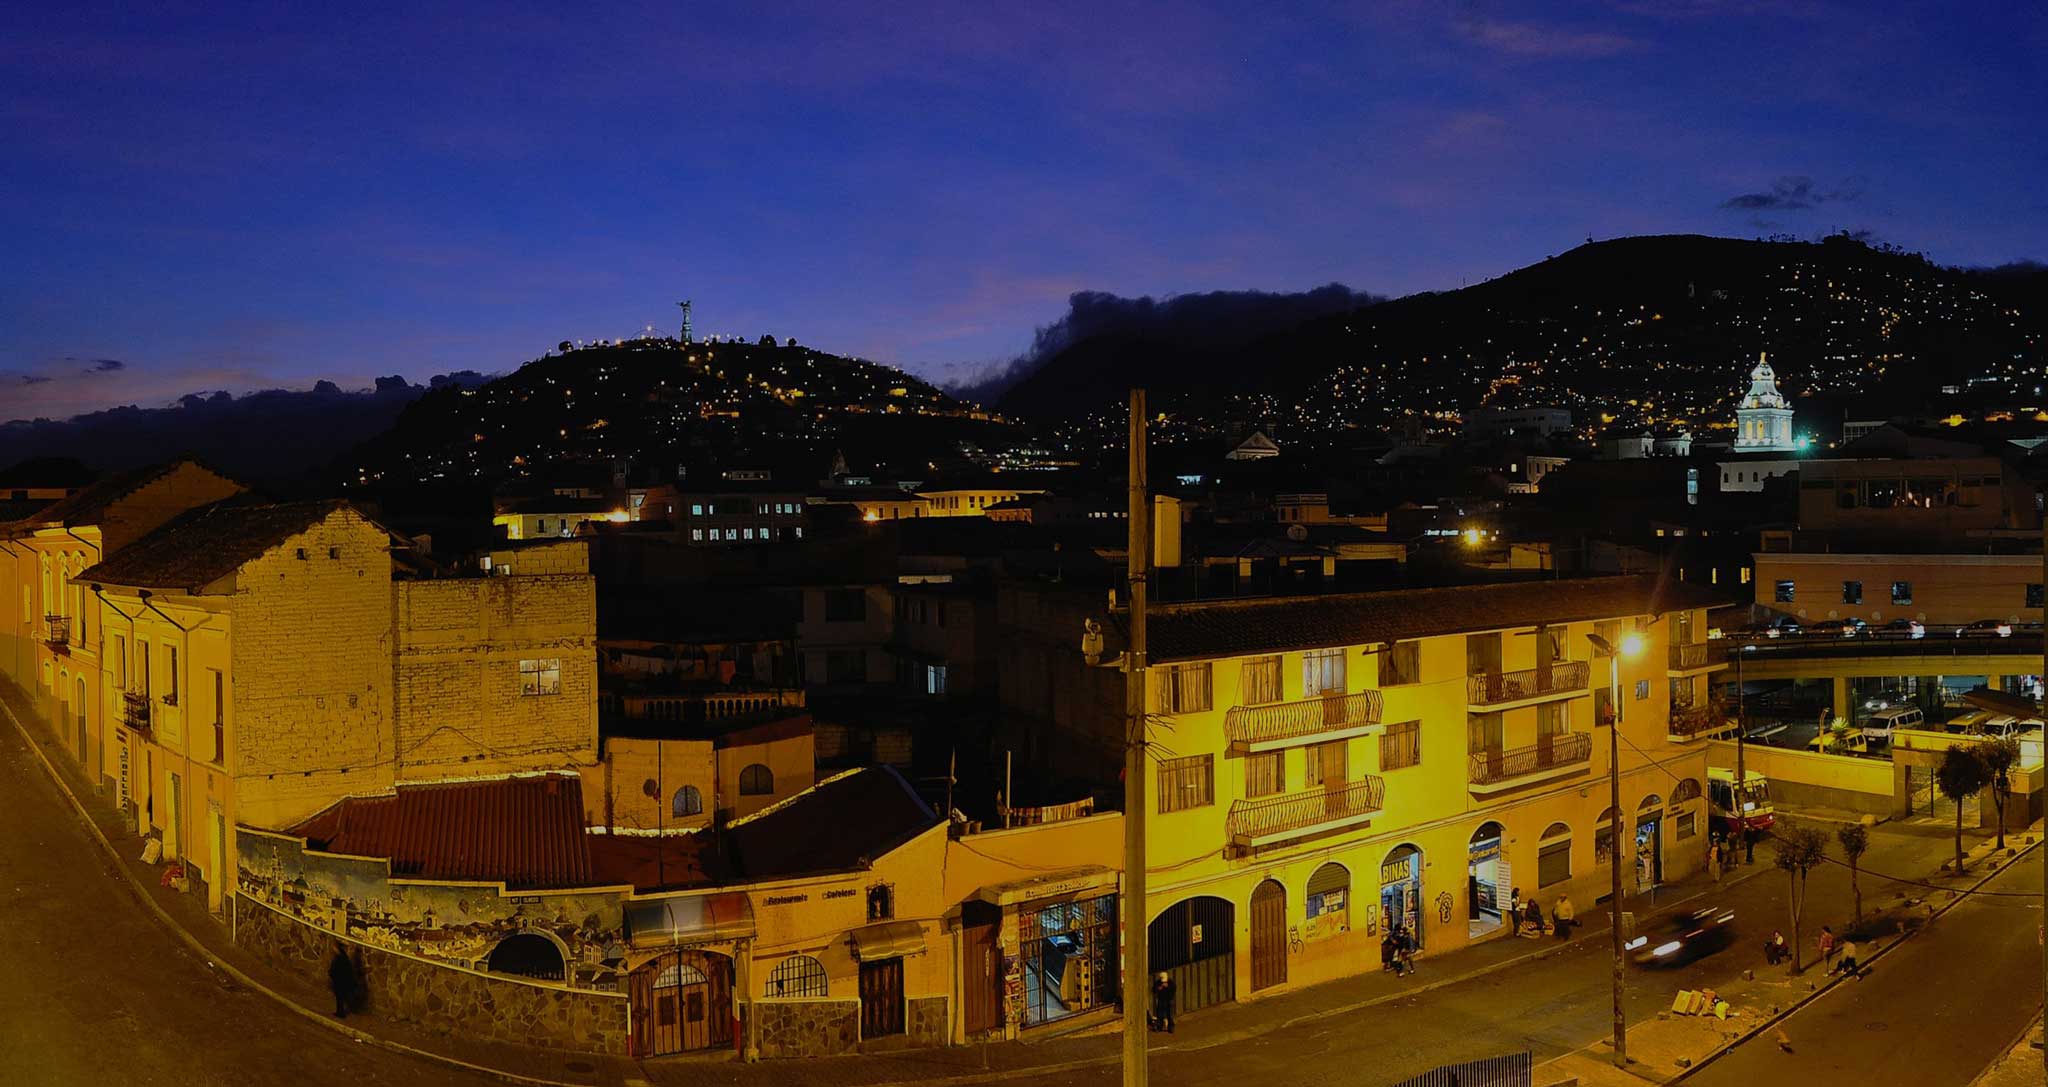 Community Hostel Quito - Home